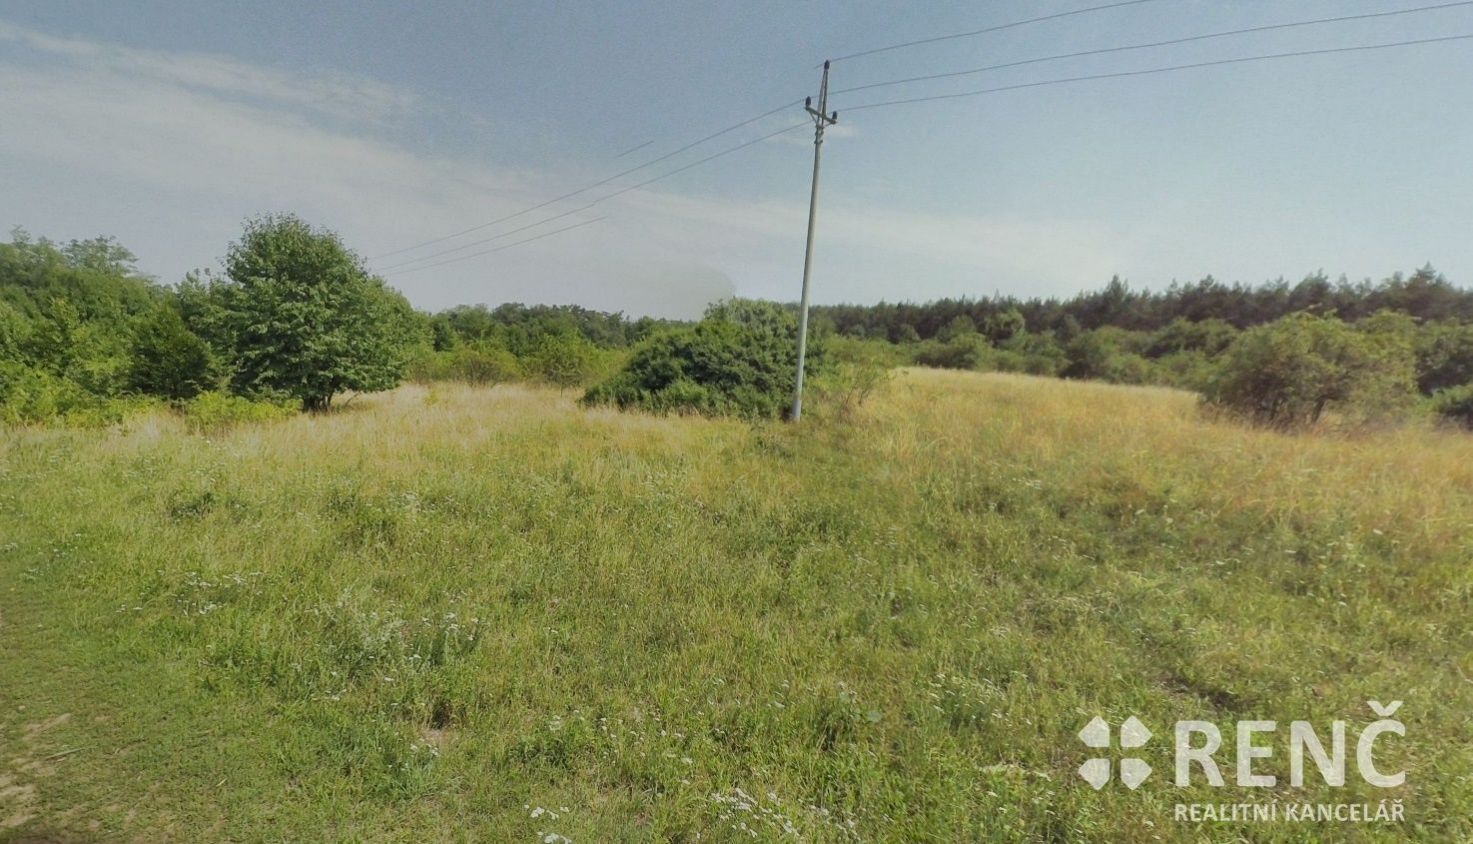 Prodej pozemku o velikosti 1145 m2 v Brně Kohoutovicích v lokalitě nad Myslivnou určeného k výstavbě, obrázek č. 2